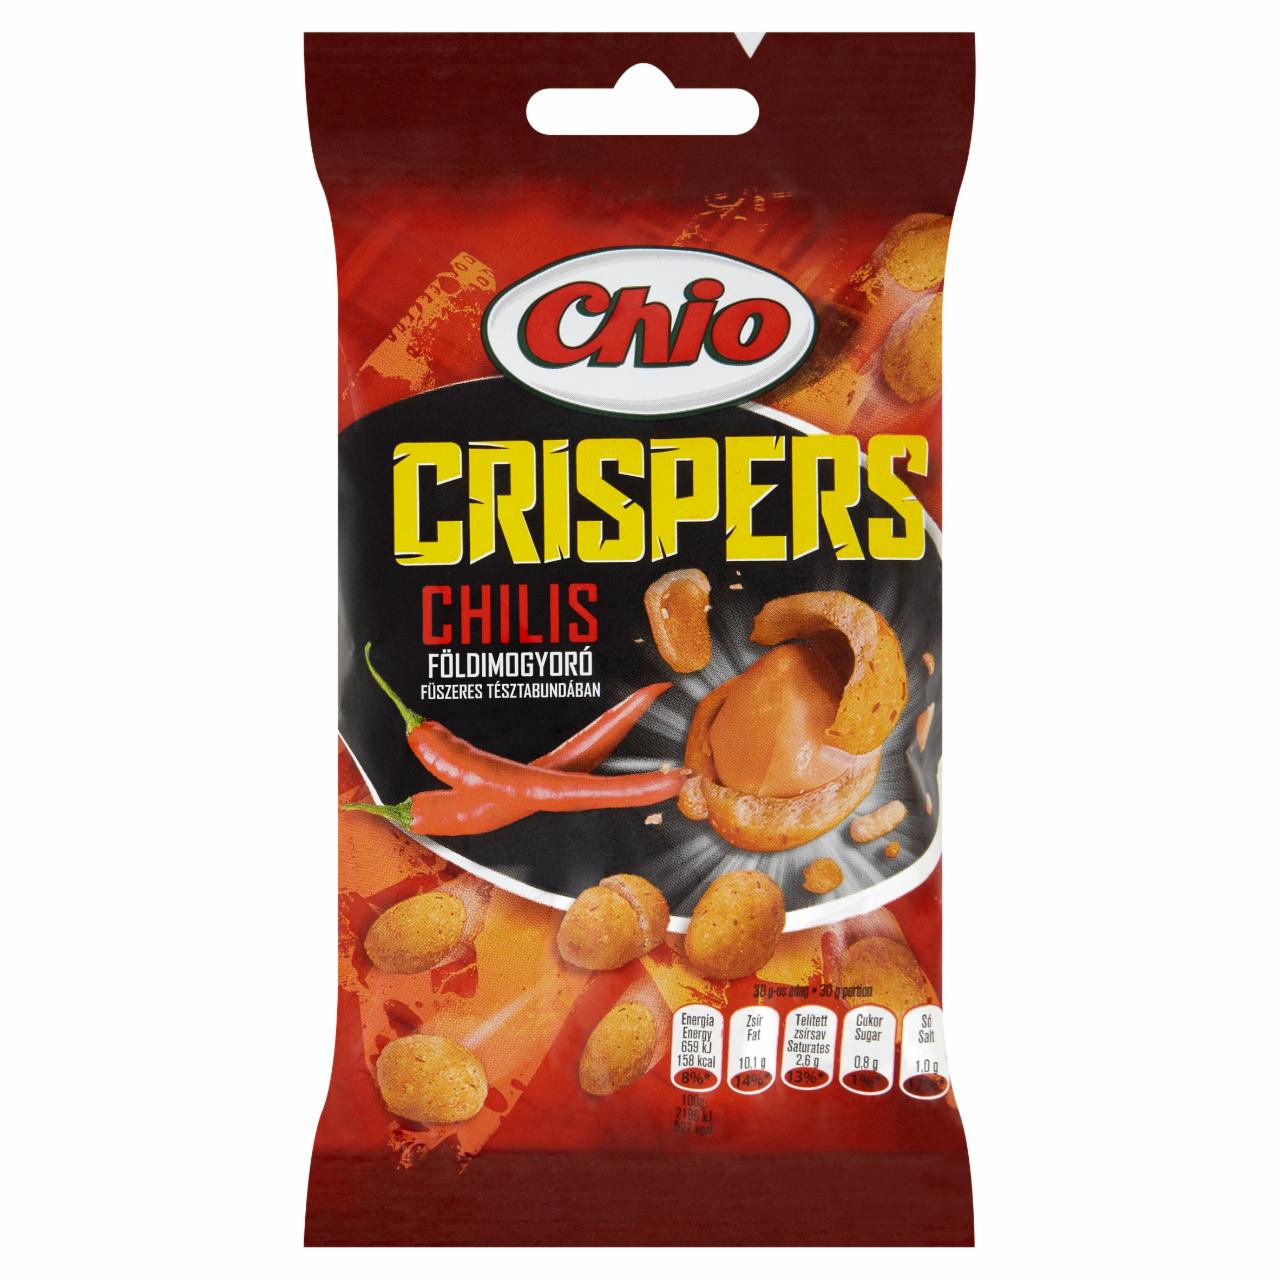 Képek - Chio Crispers földimogyoró chilis tésztabundában 60 g